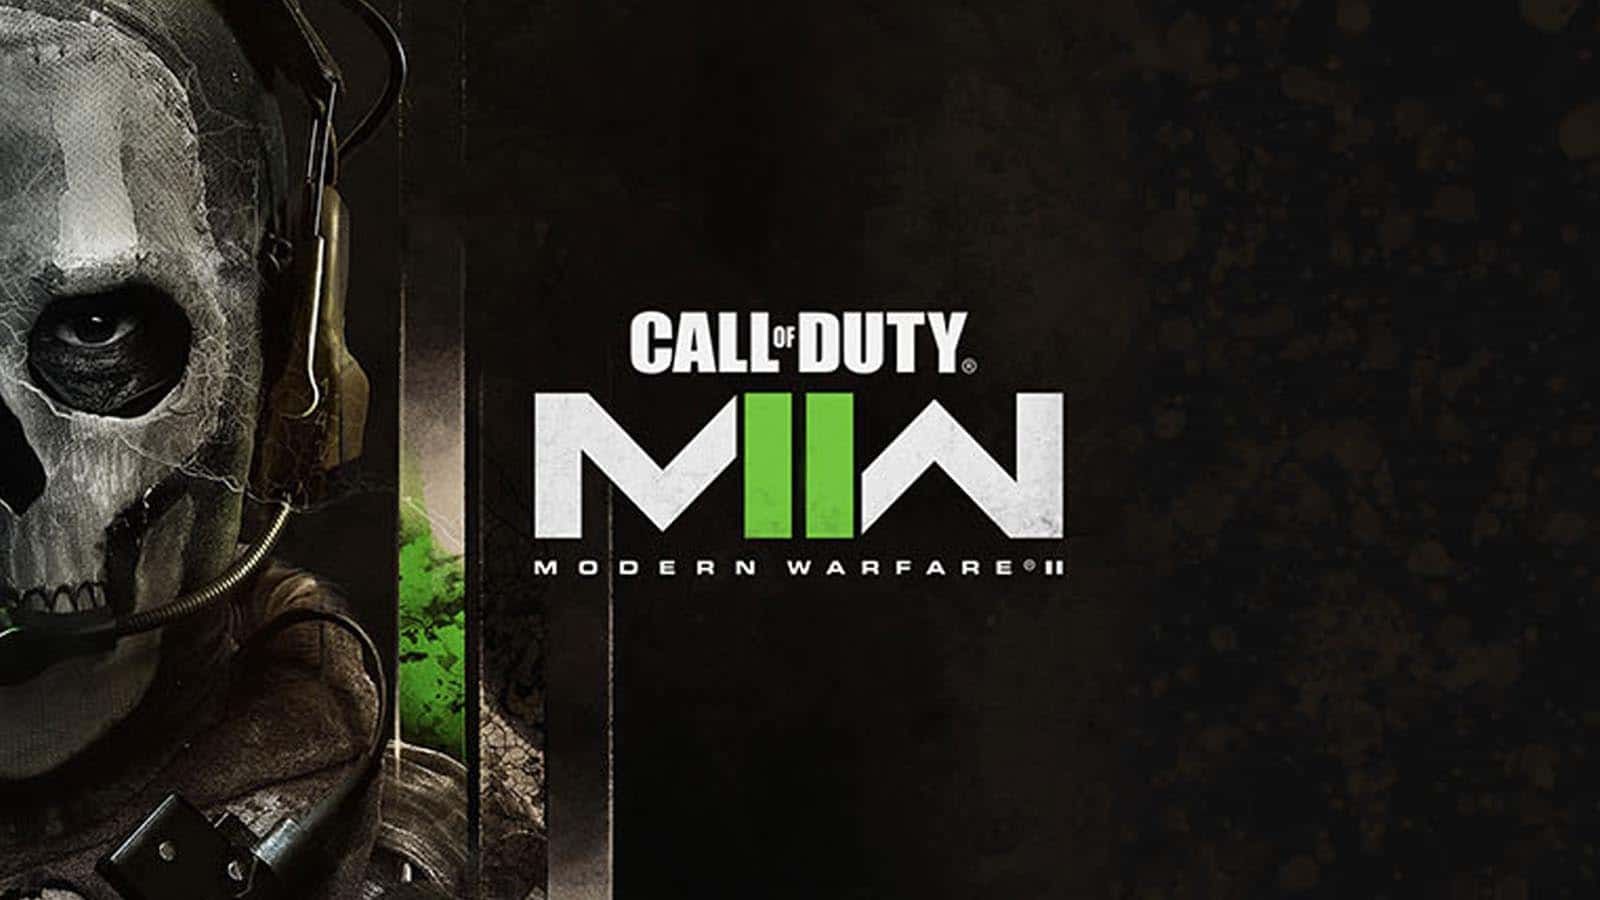 Review Of Duty: Modern Warfare 2